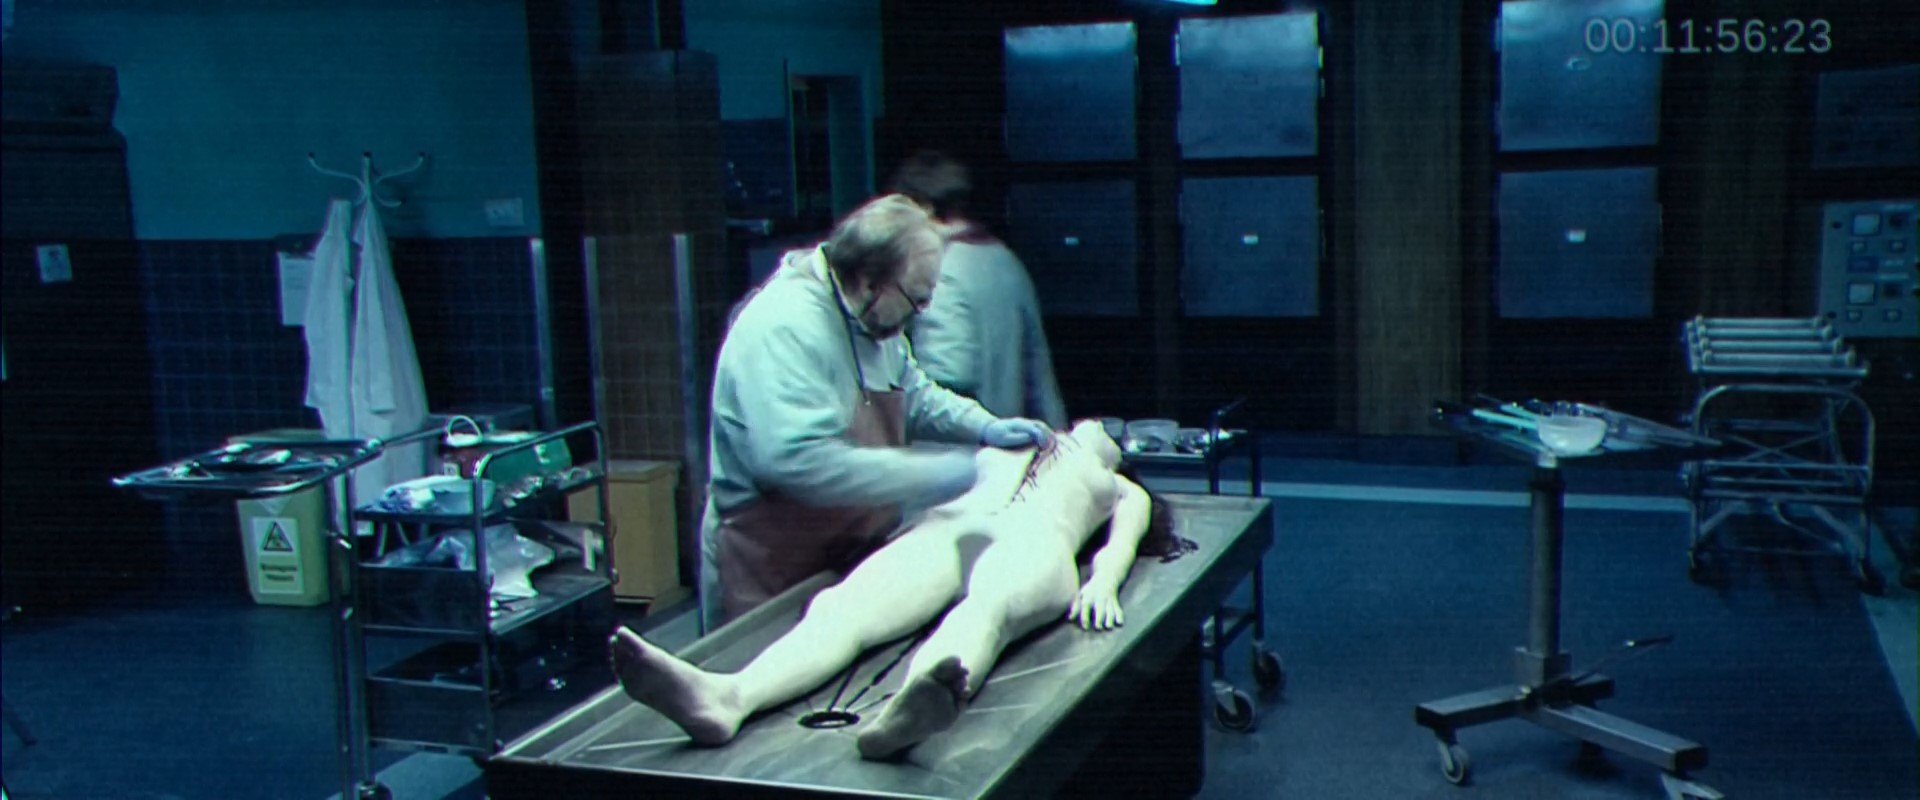 Olwen Kelly Nude - The Autopsy of Jane Doe (2016) HD 1080p.